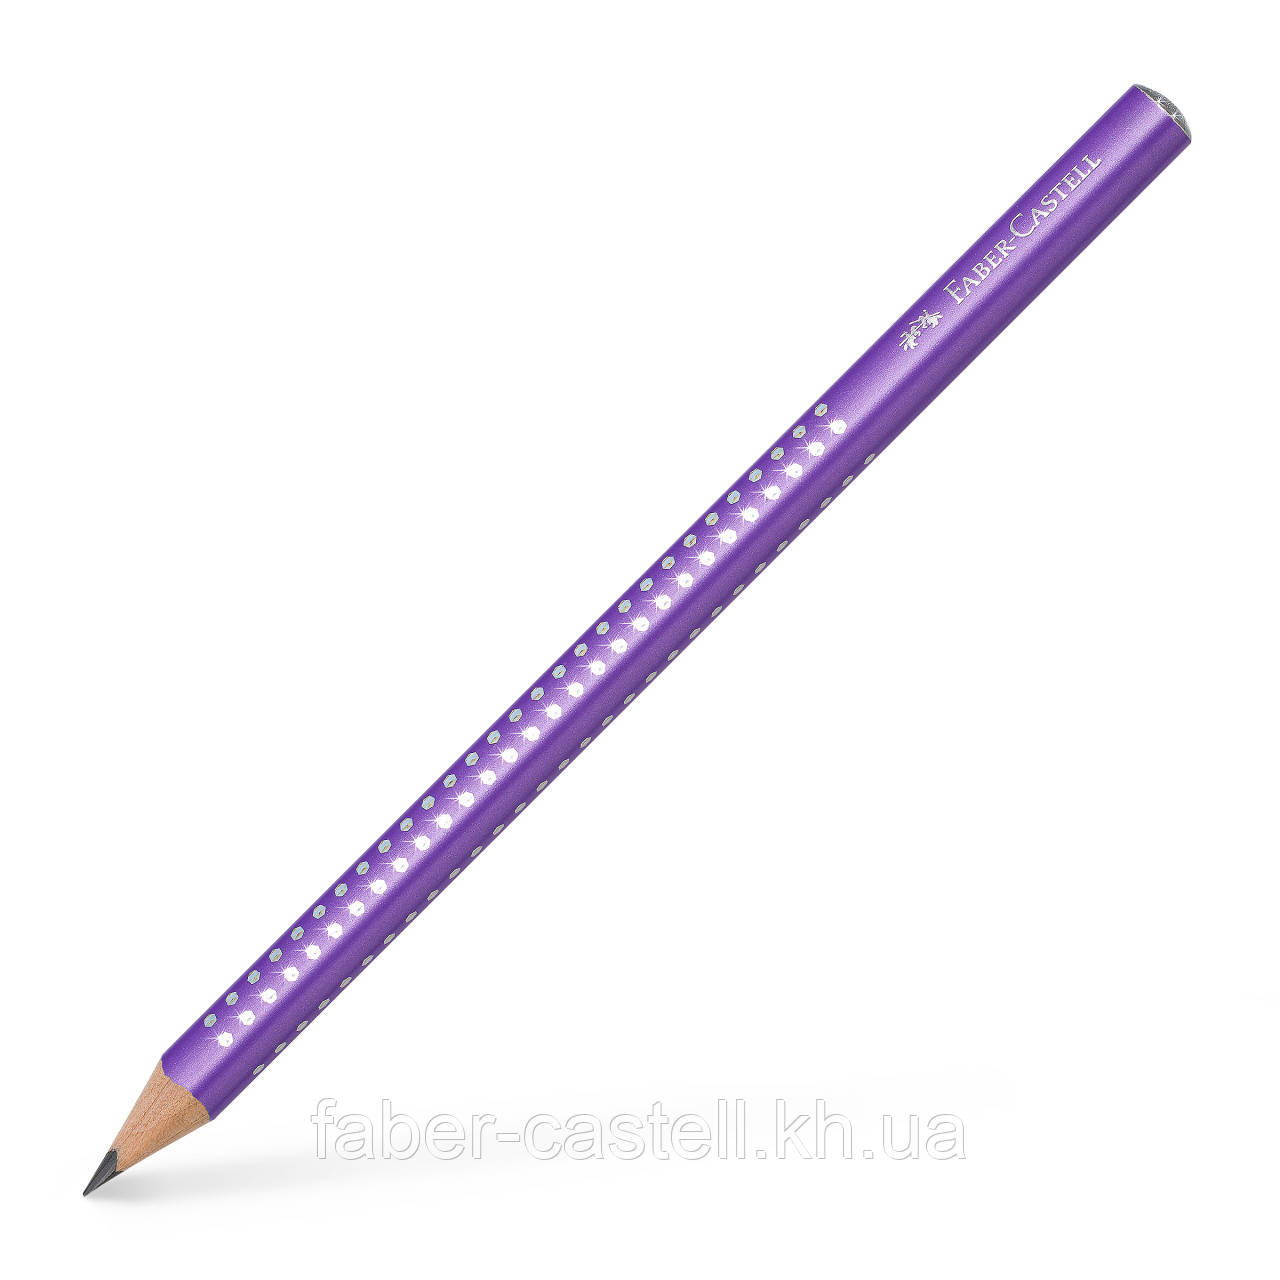 Олівець чорнографітний потовщений Faber-Castell Jumbo Grip Sparkle 2001 корпус фіолетовий, 111604